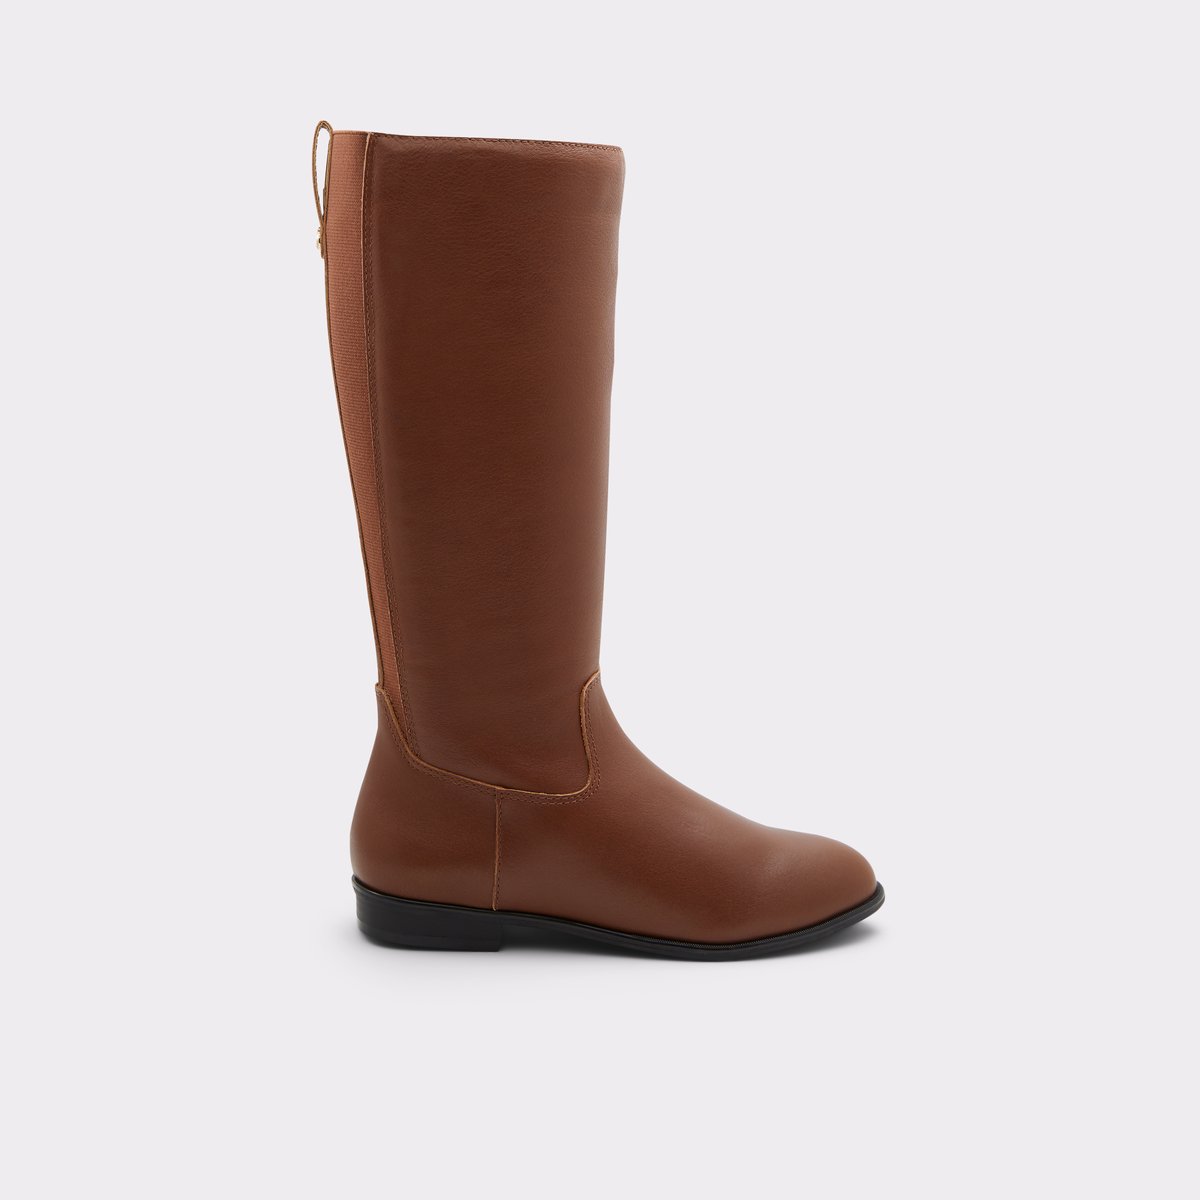 Riraven Medium Brown Women's Casual boots | ALDO Canada